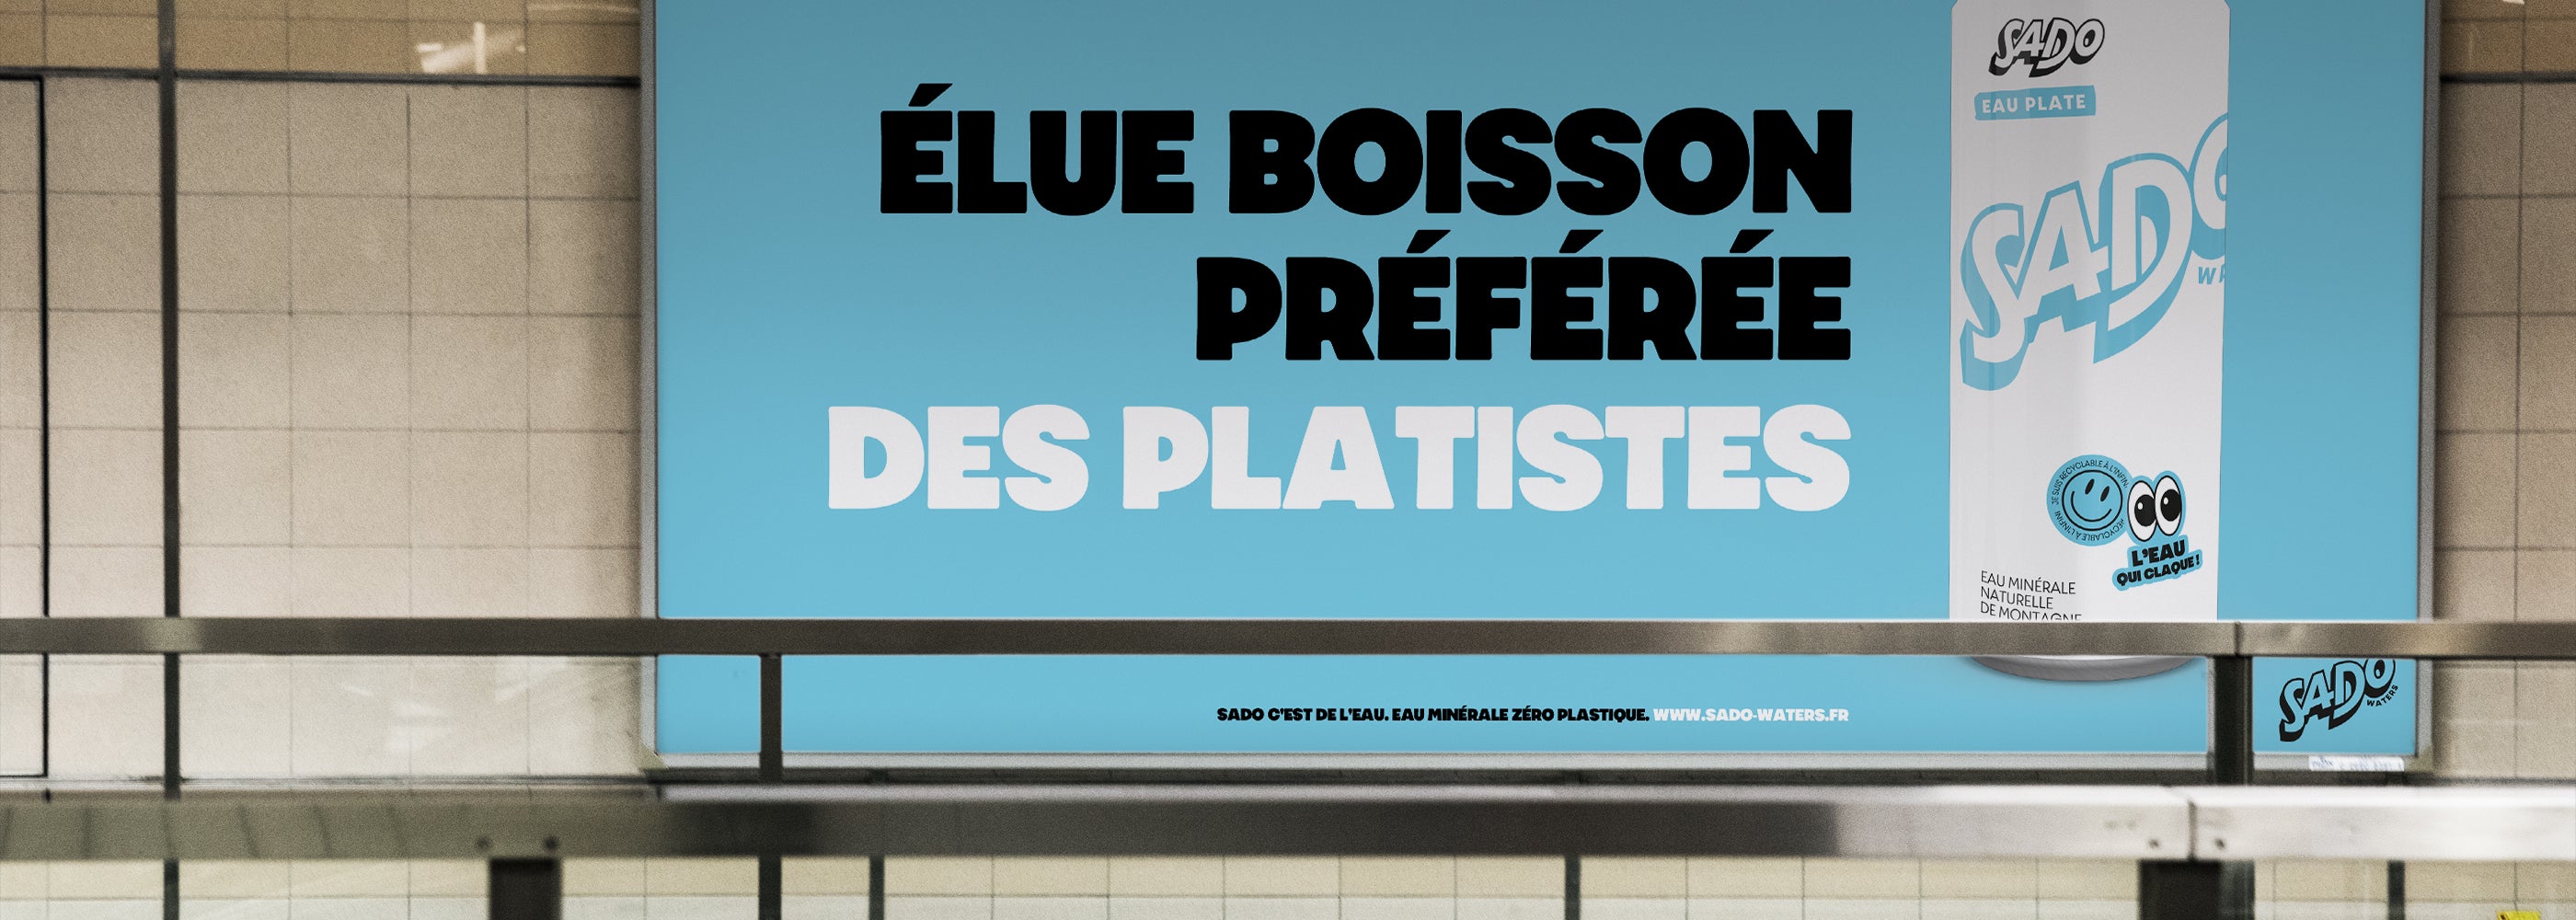 Campagne d'affichage métro SADO Waters Boisson préférée des platistes. Eau minérale plate en canette 500 ml